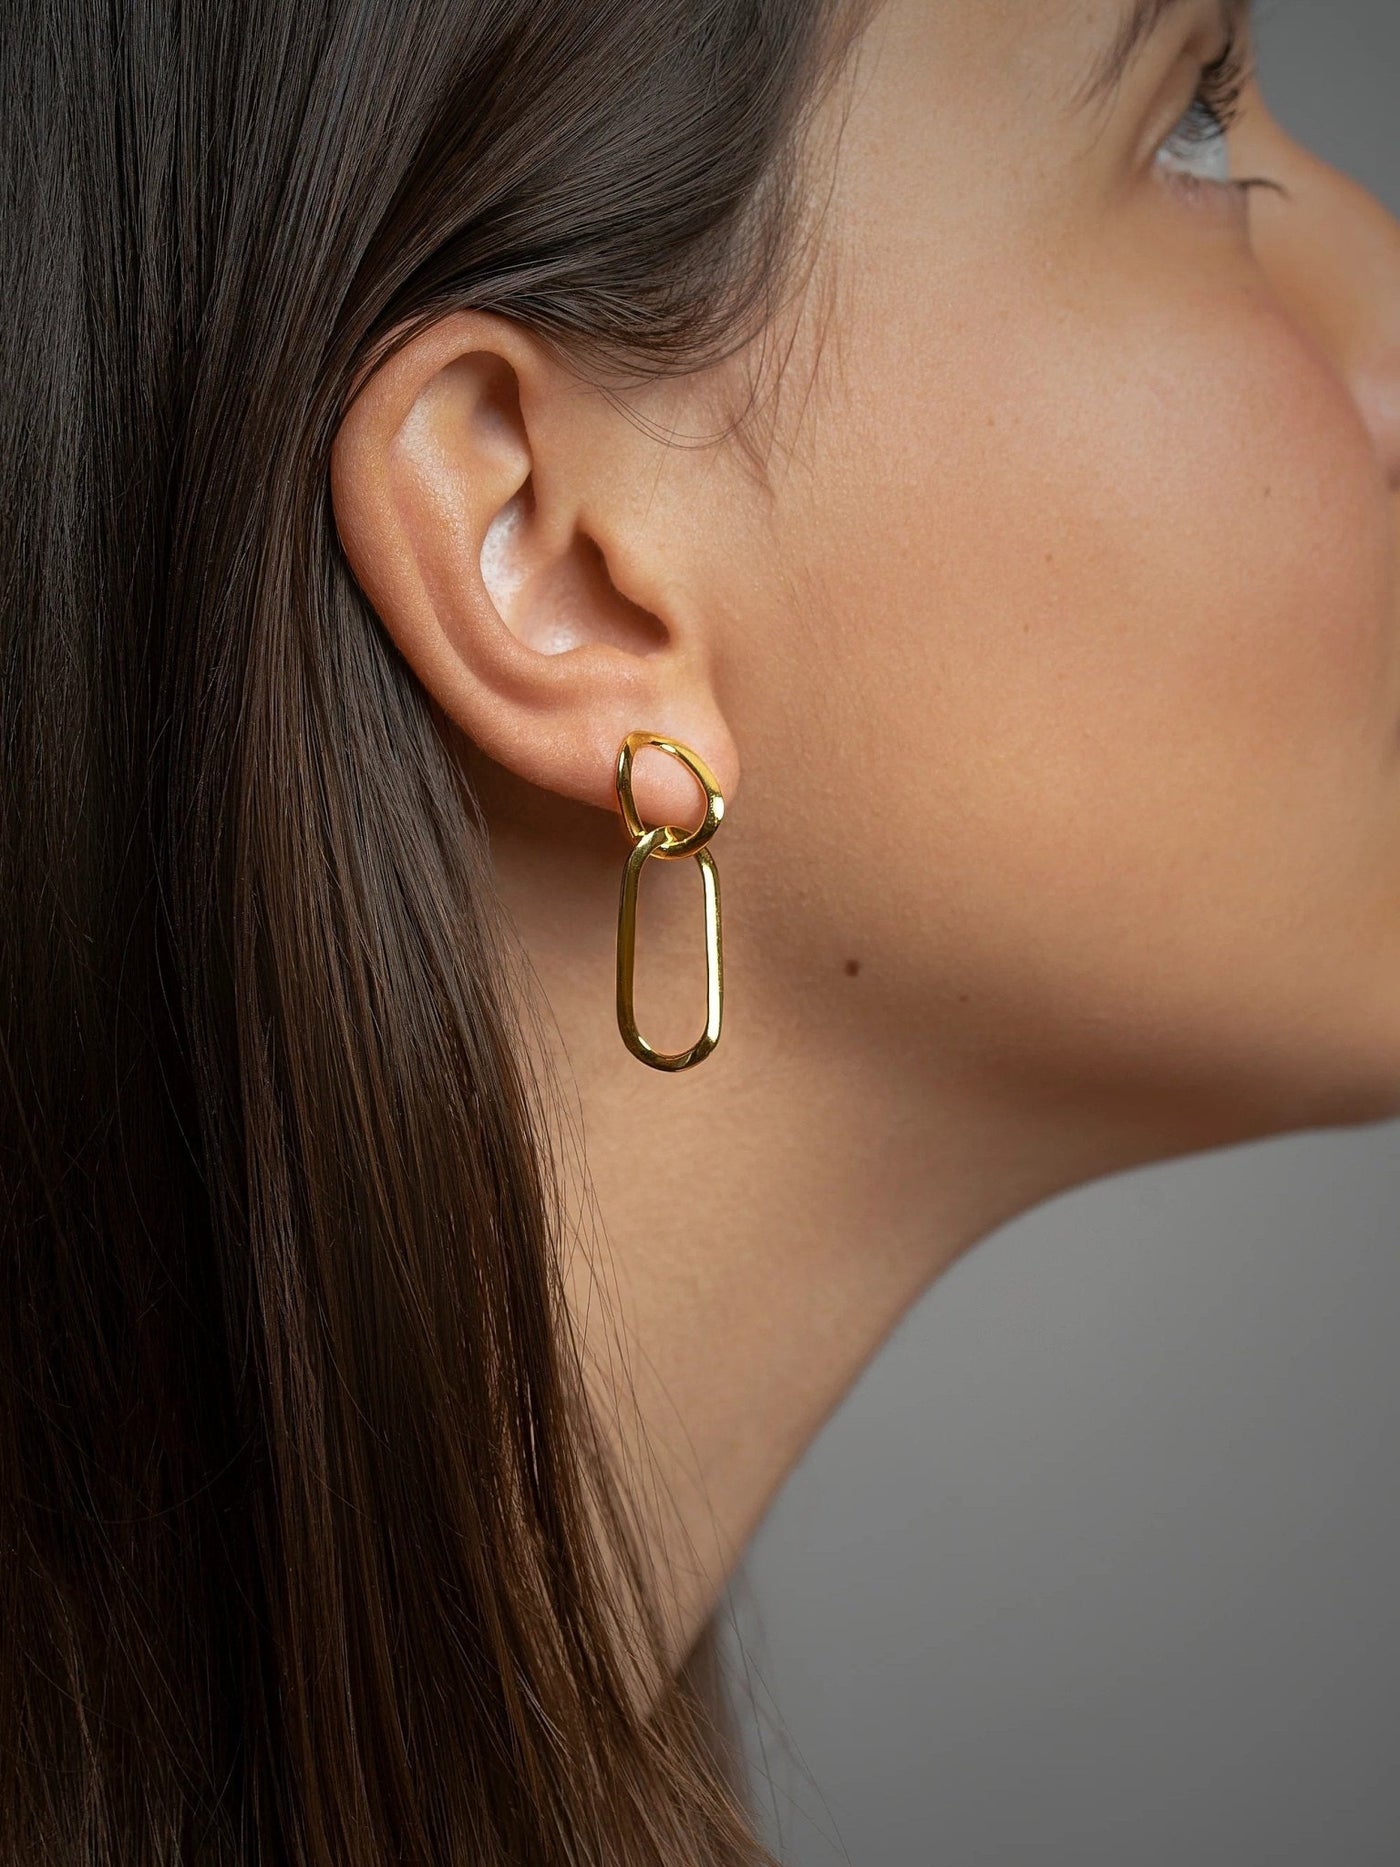 Vermilia Gold Link Earrings - 24K Gold Platedcable link EarringsChain Drop EarringsLunai Jewelry